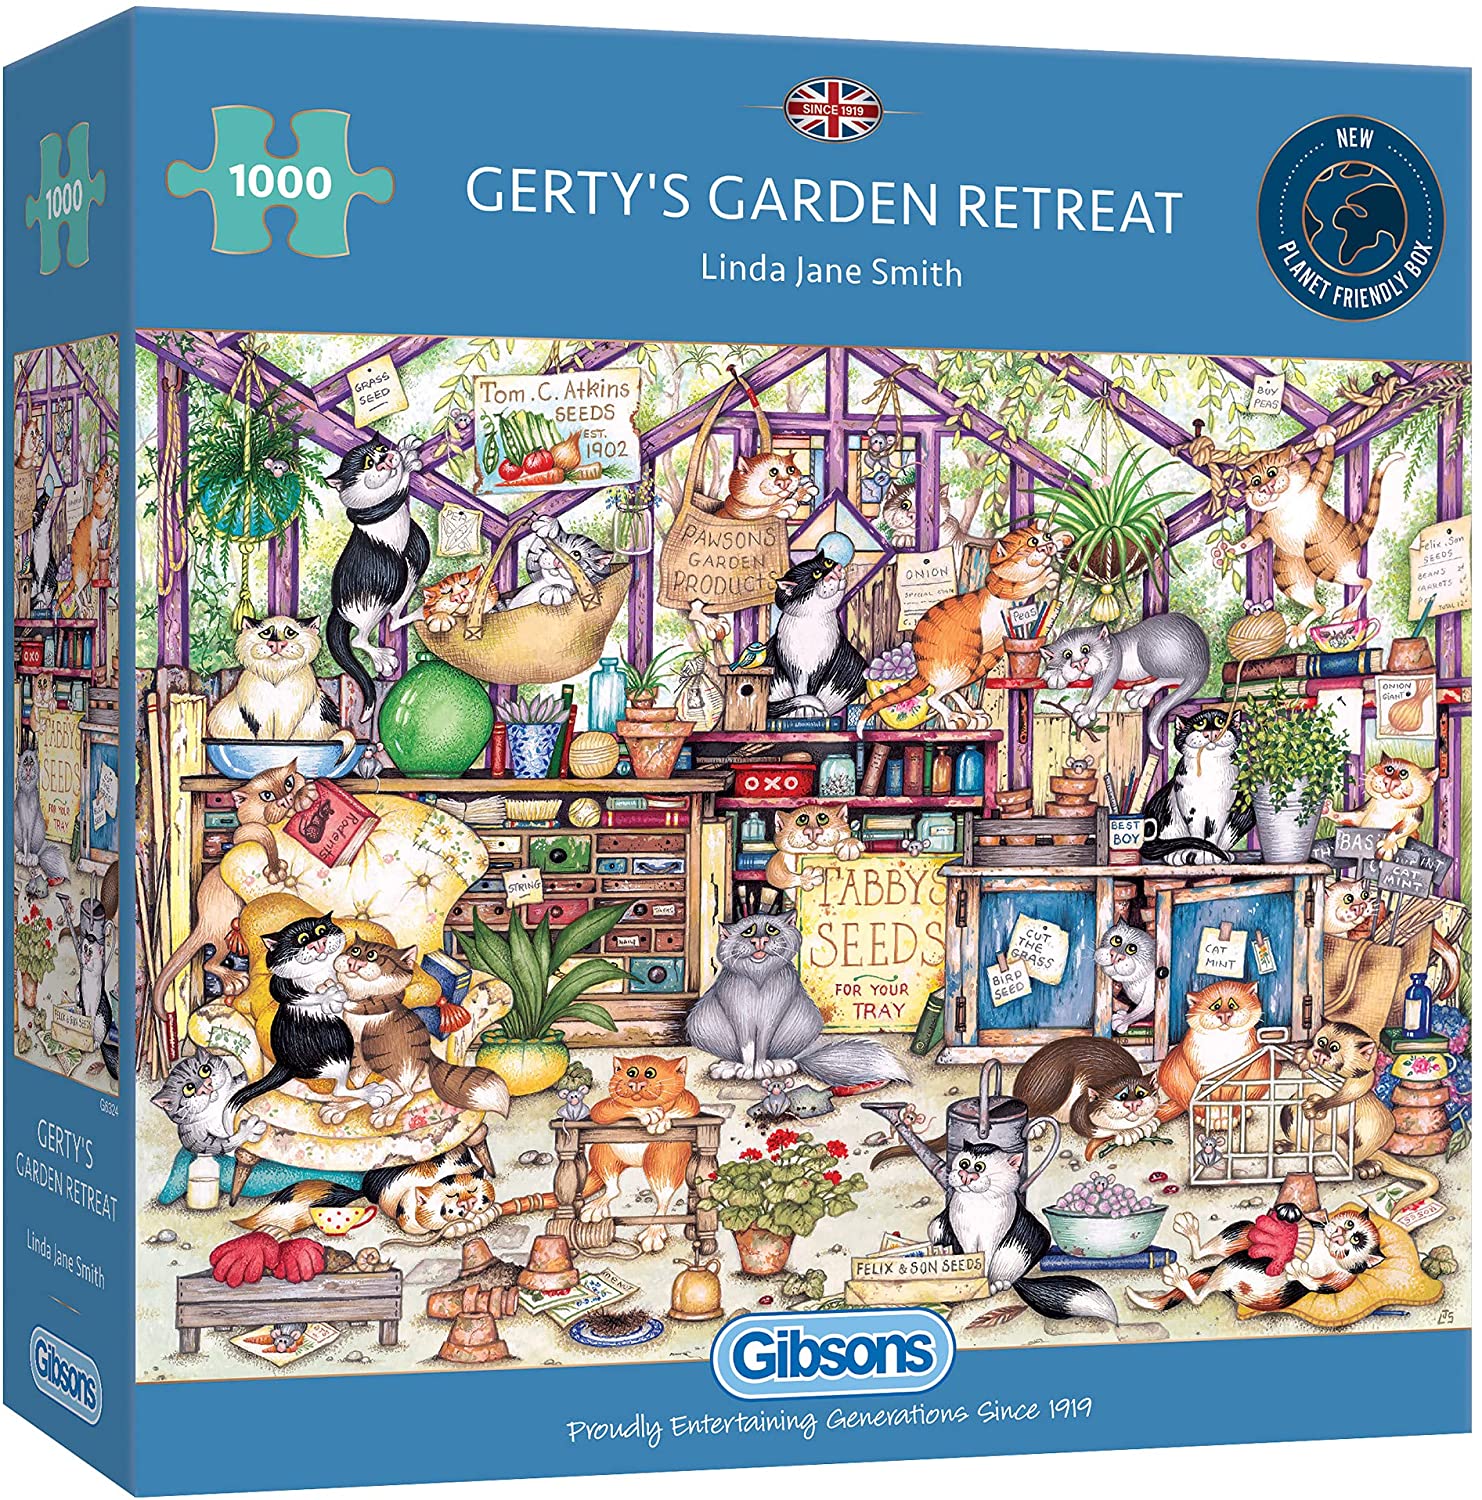 Gerty's Garden Retreat